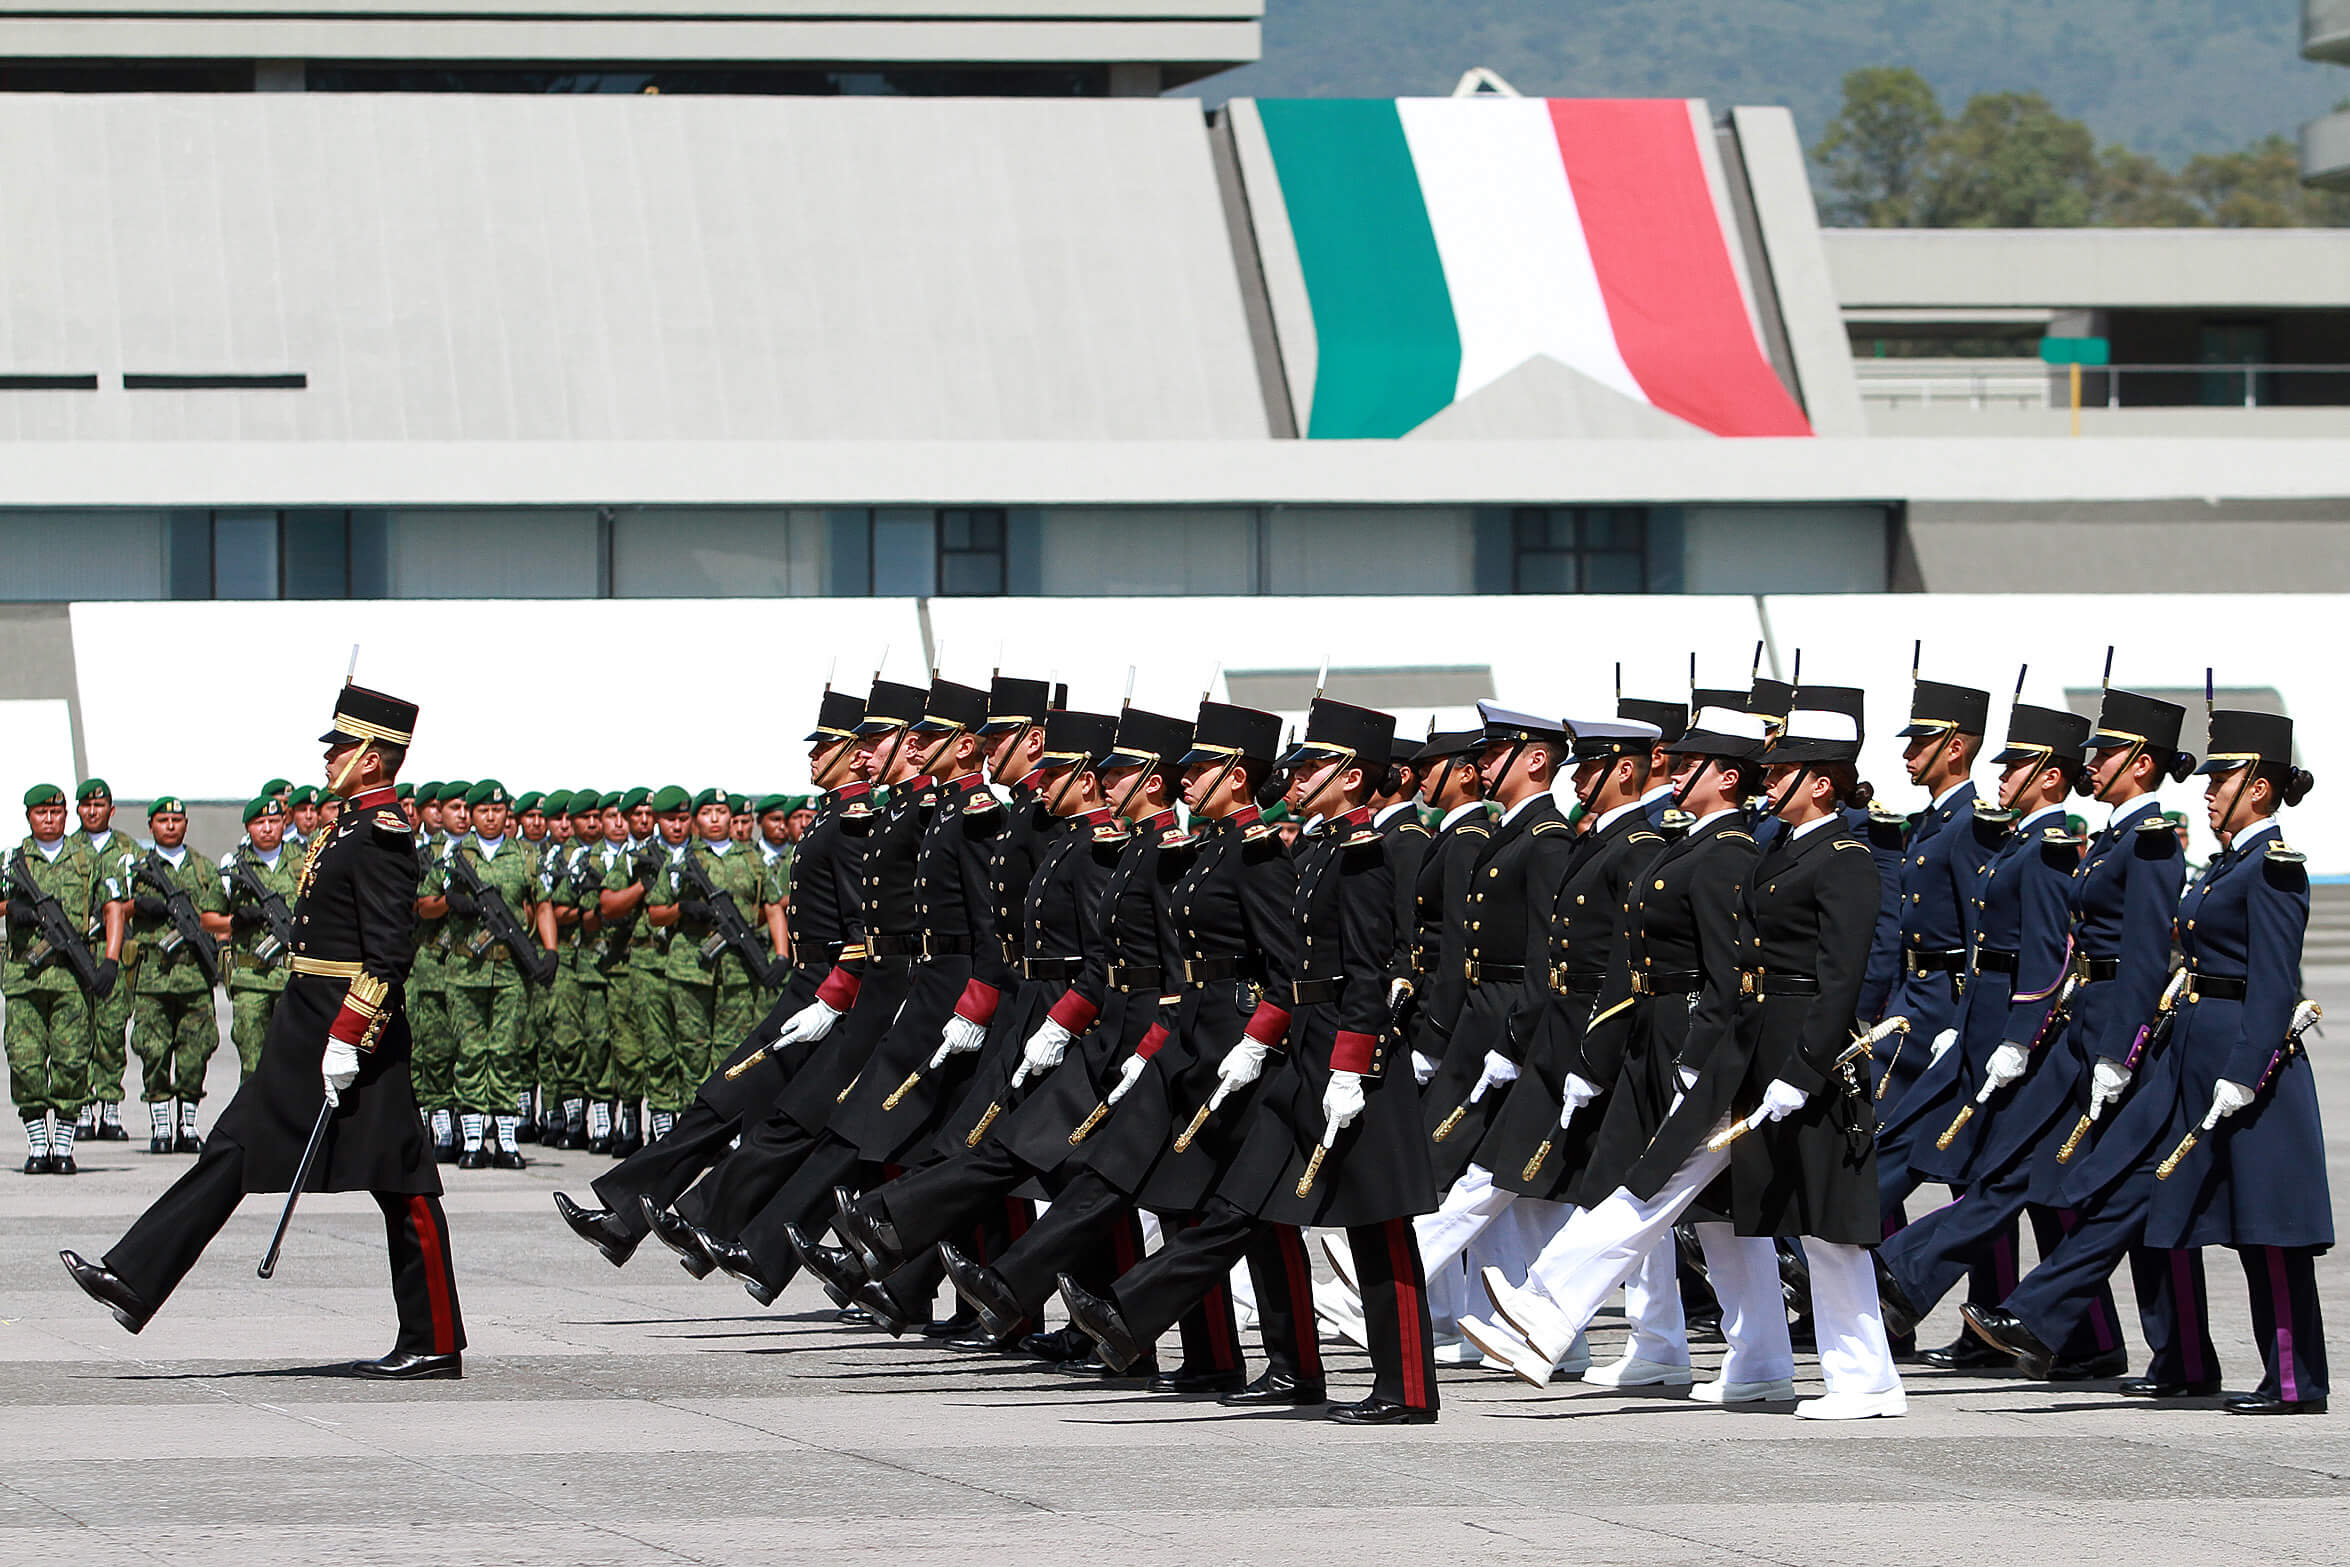 Depresión y estrés entre fuerzas armadas en México, ¿qué atención reciben?